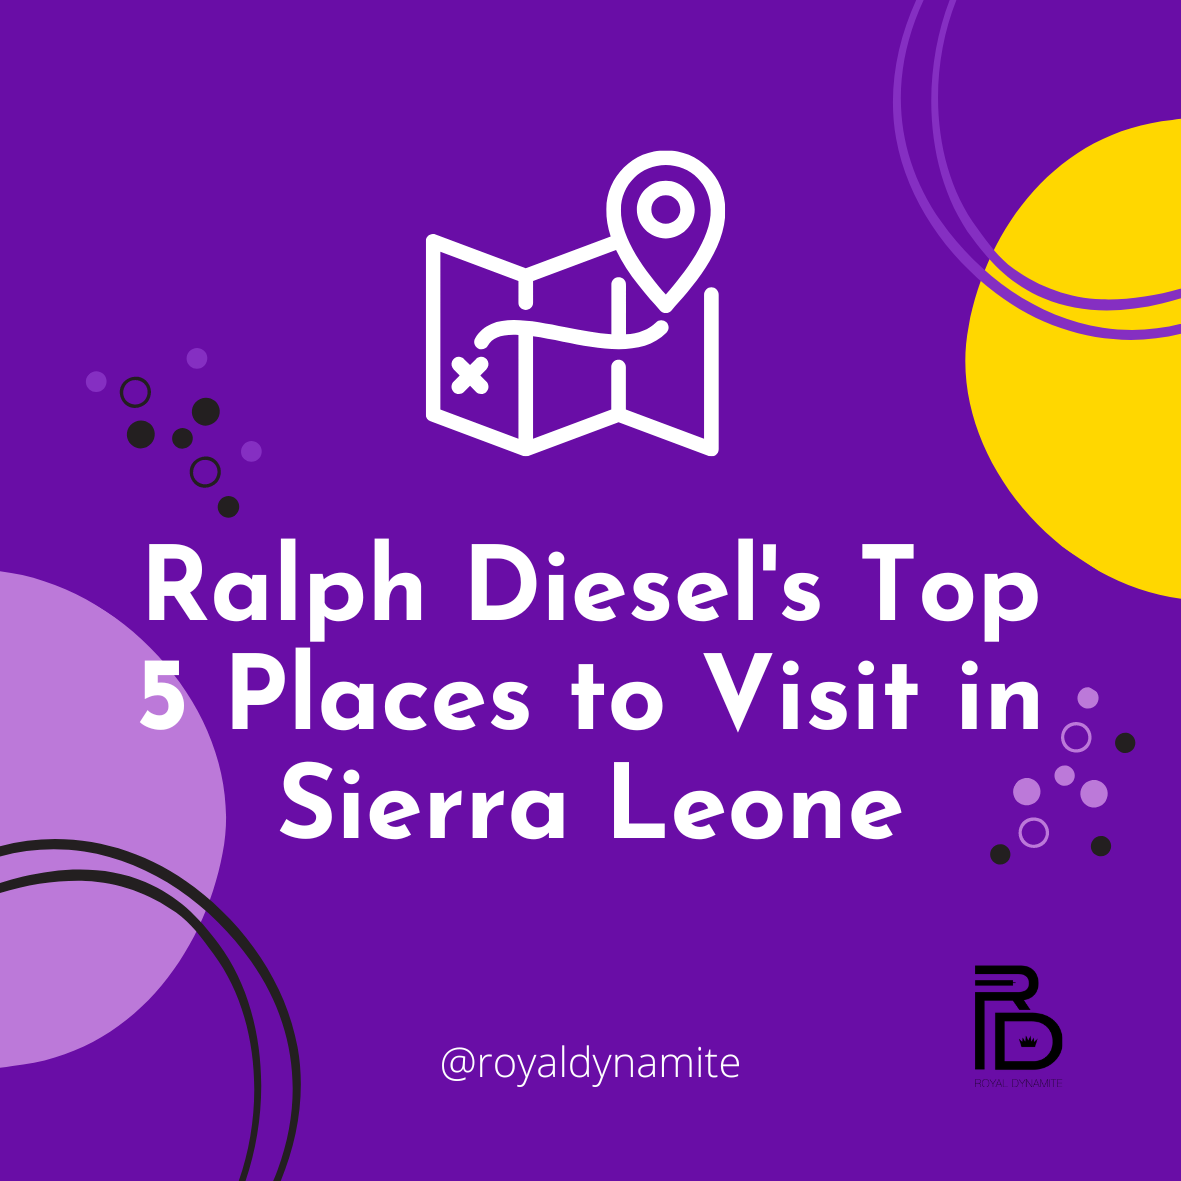 Ralph Diesel's Top 5 Places to Visit in Sierra Leone